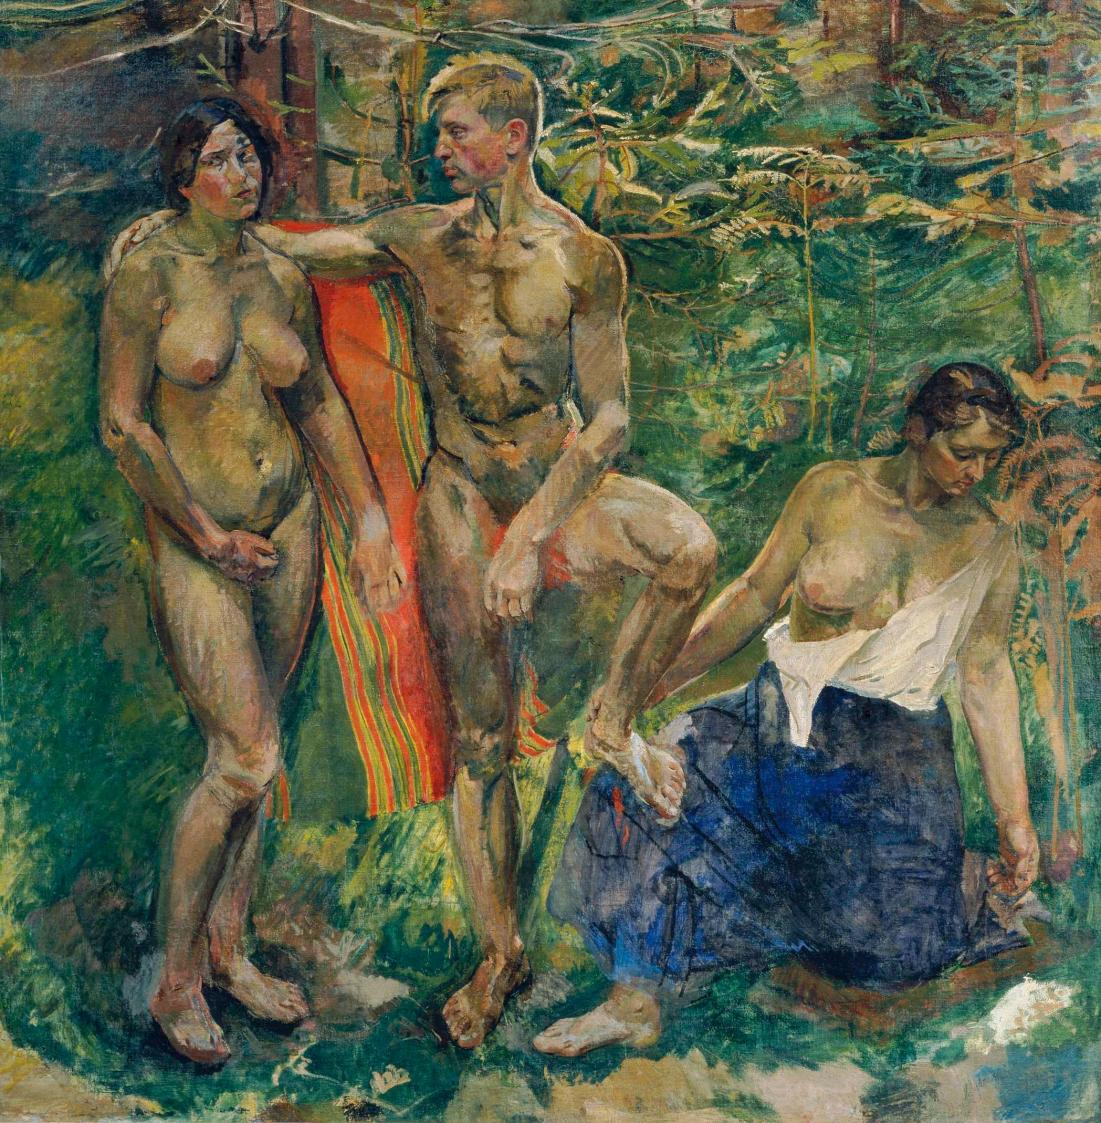 Franz Wiegele, Akte im Wald, 1910-1911, Öl auf Leinwand, 198 x 198 cm, Belvedere, Wien, Inv.-Nr ...